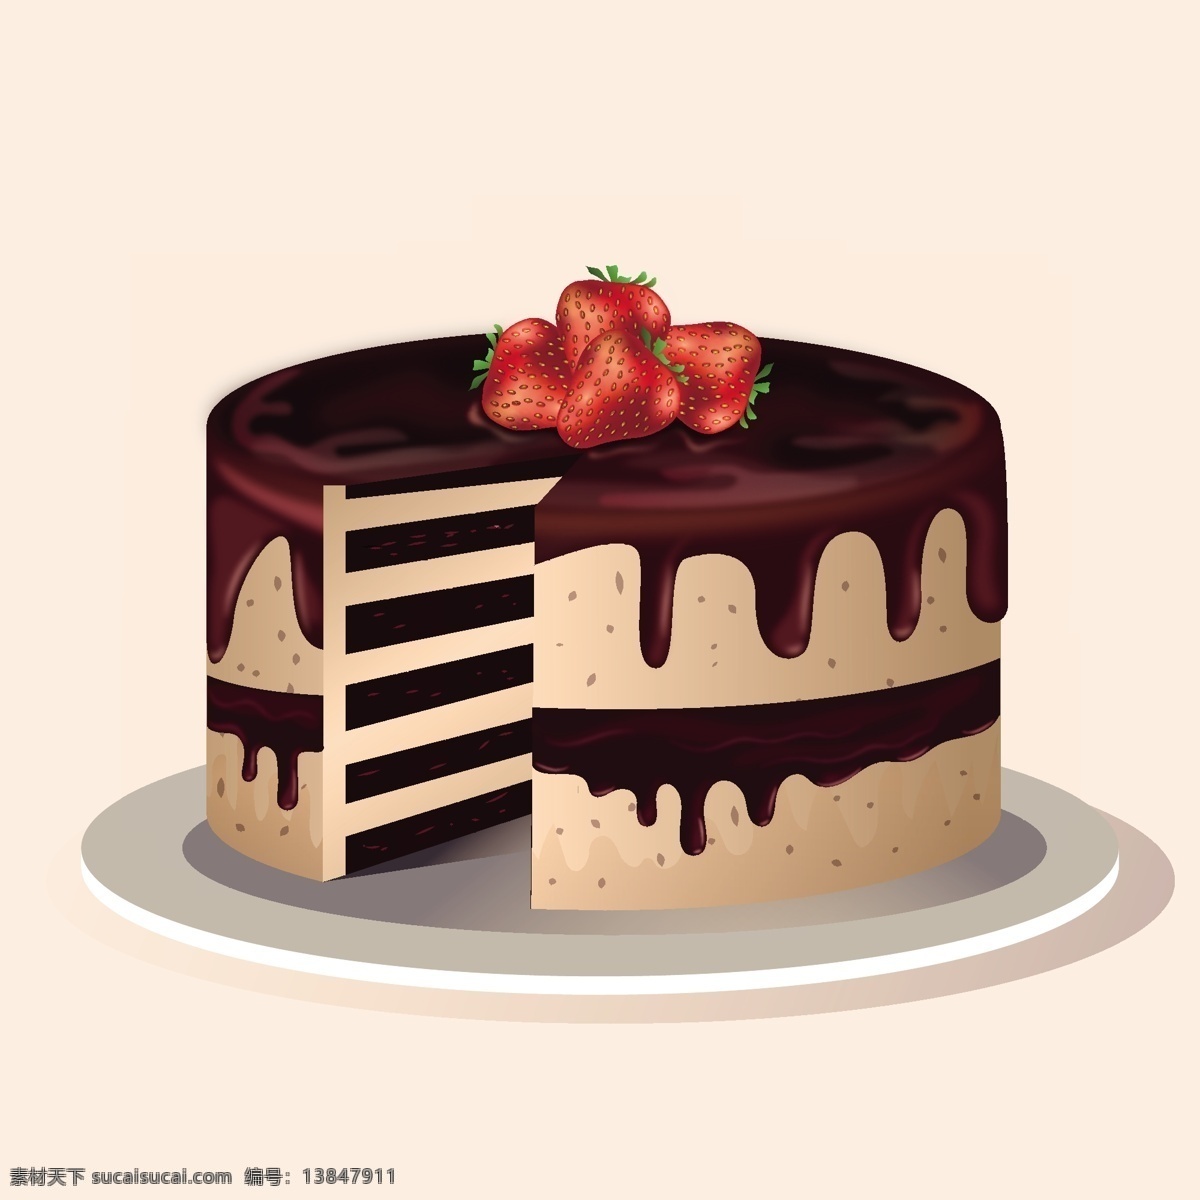 手绘蛋糕 生日蛋糕 爱心蛋糕 蛋糕diy 手绘 甜点 蛋糕 食品 西式蛋糕 烘培蛋糕 卡通蛋糕 糕点 矢量插画 生活百科 餐饮美食